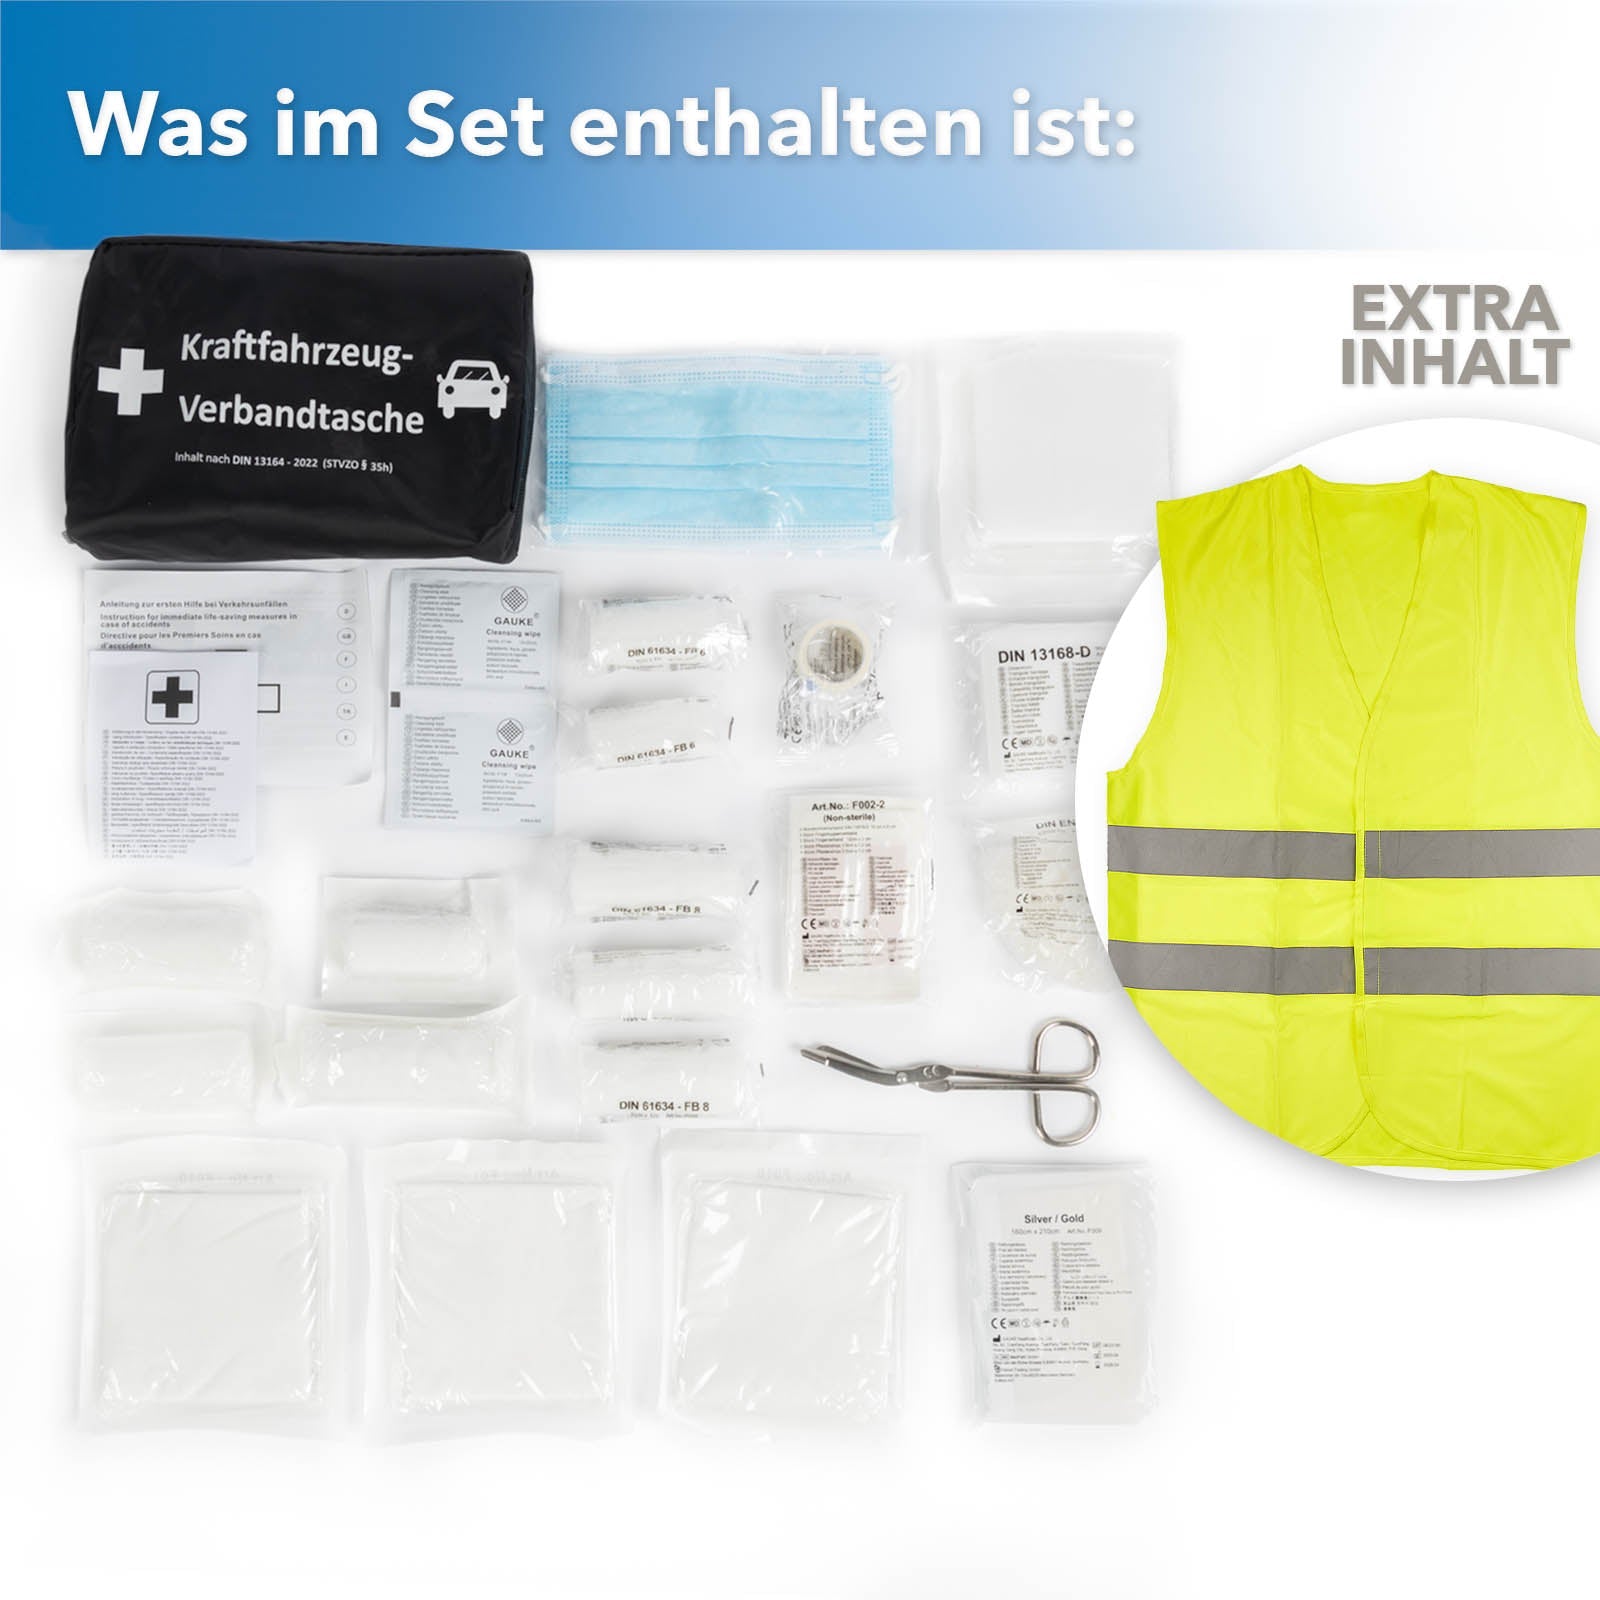 Verbandtasche nach EU DIN 13164 mit Klettbefestigung für einen sichern Halt  im Kofferraum